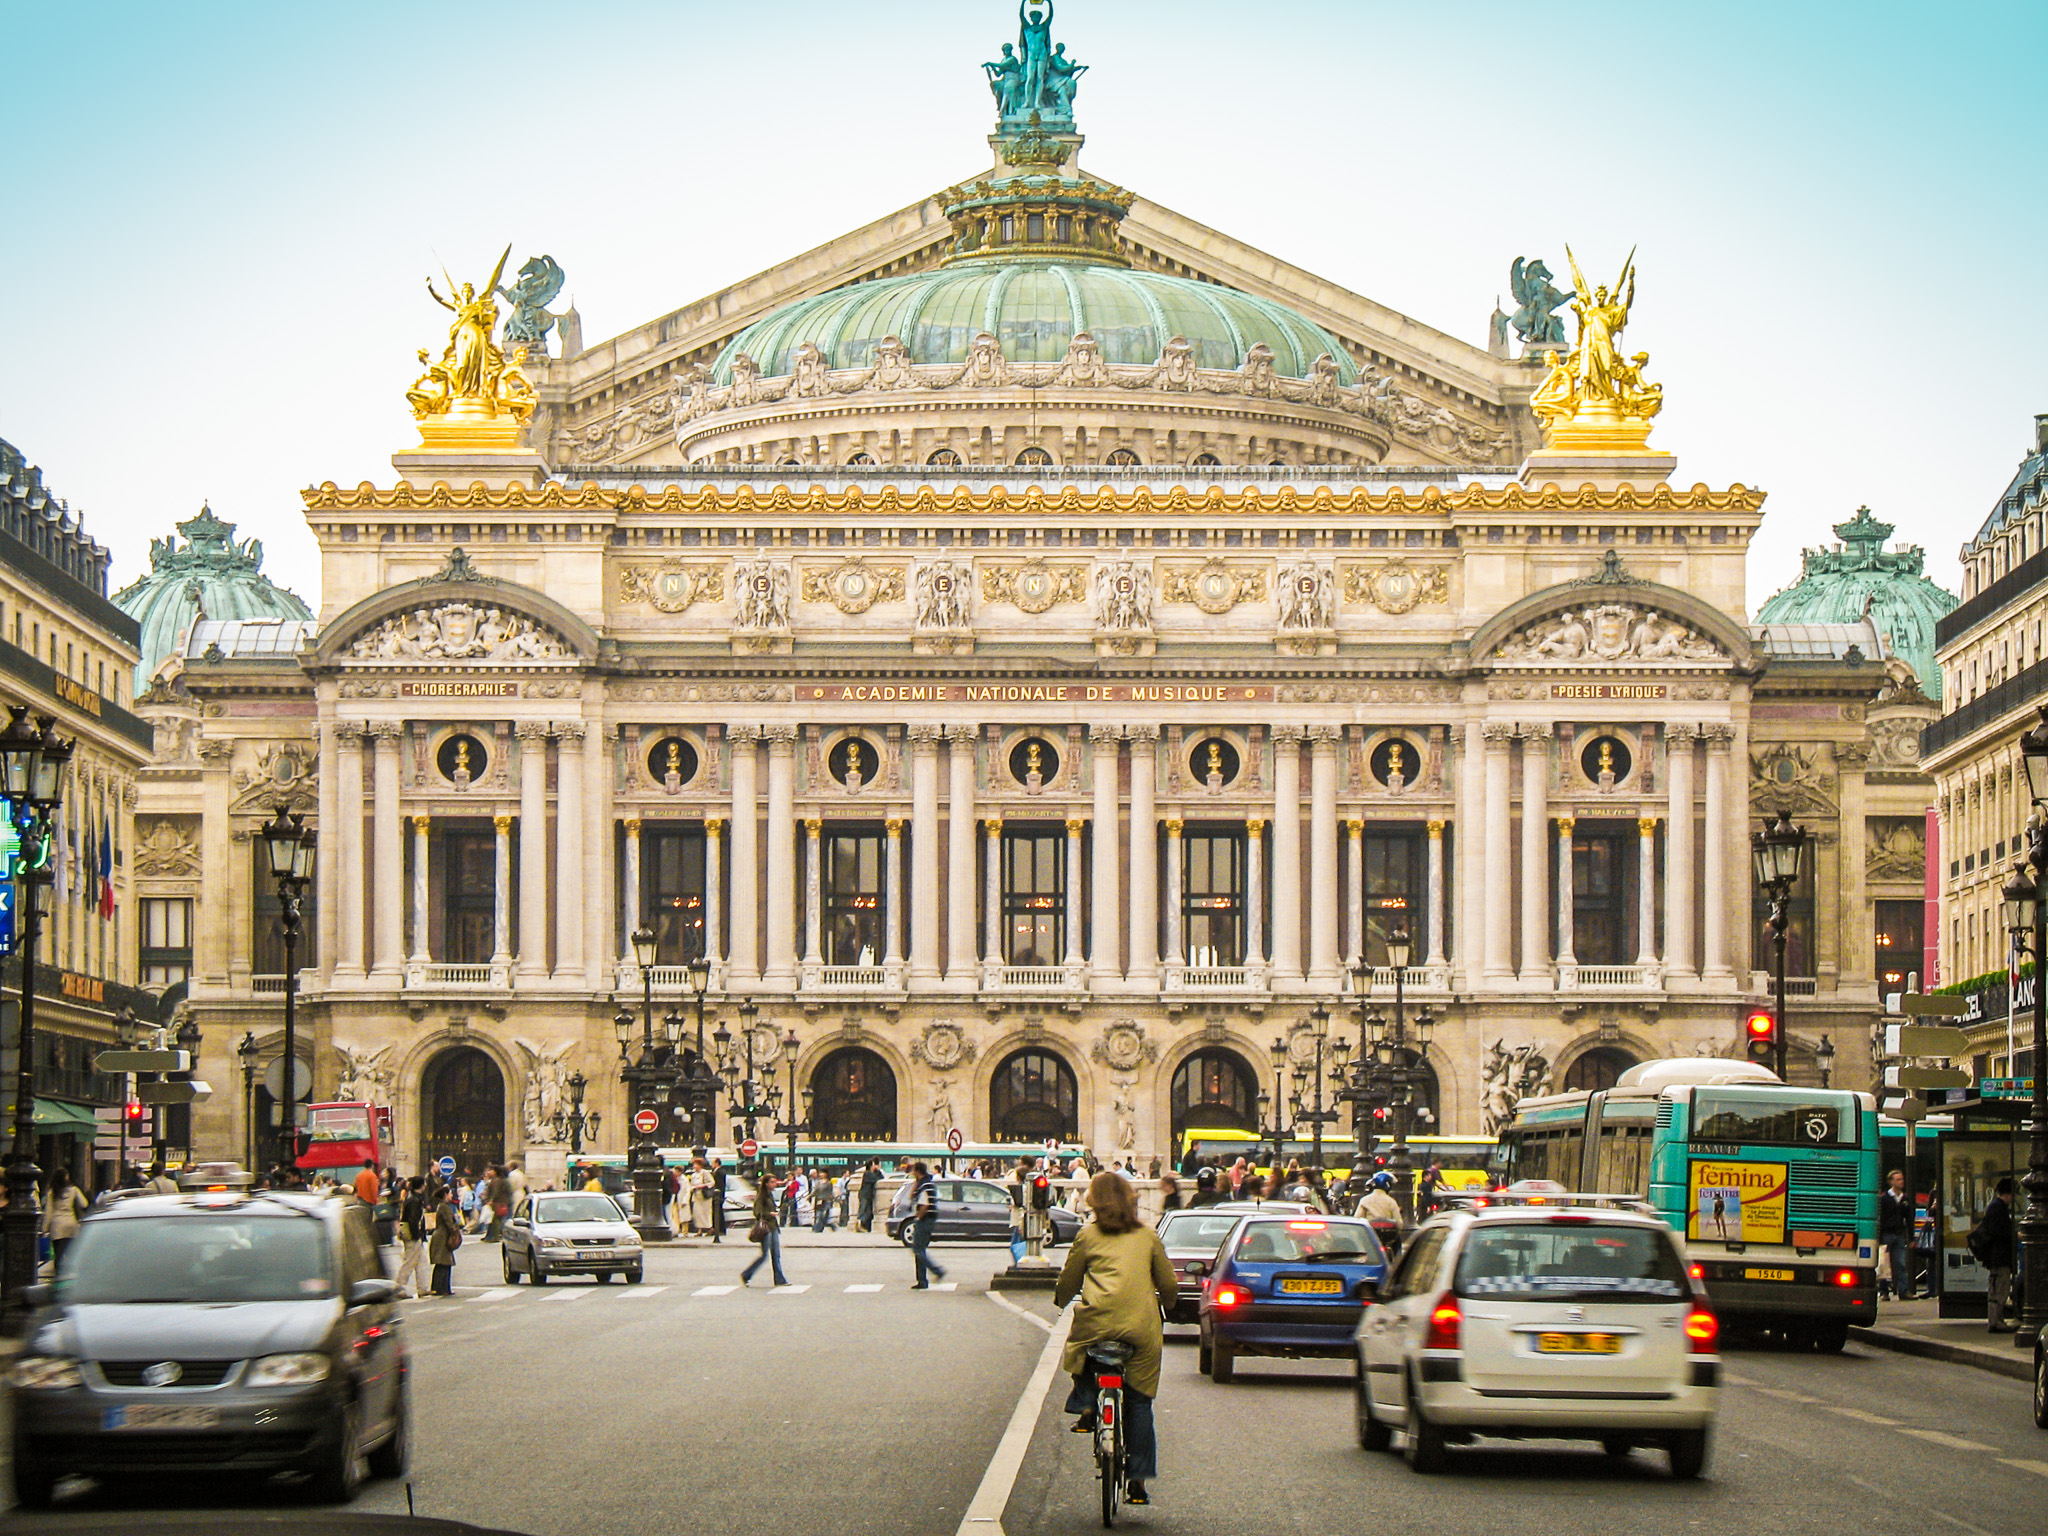 The front facade of the Palais Garnier opera house